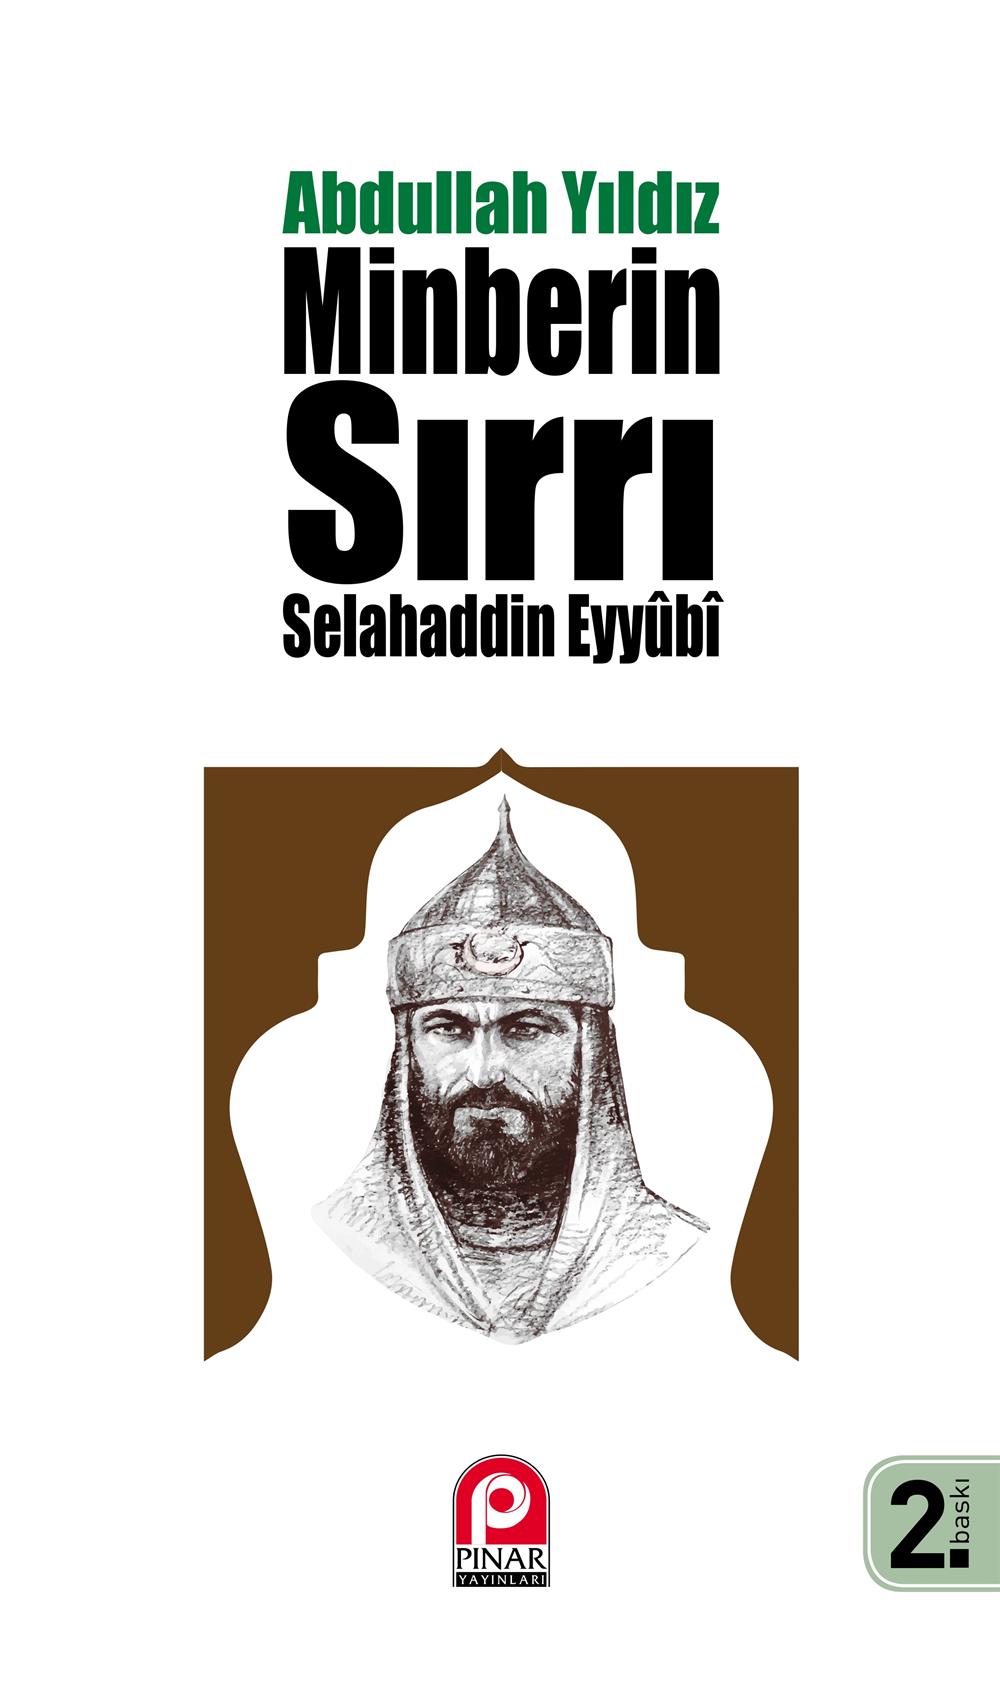 Abdullah Yıldız, Selahaddin Eyyubi: Minberin Sırrı, 2017